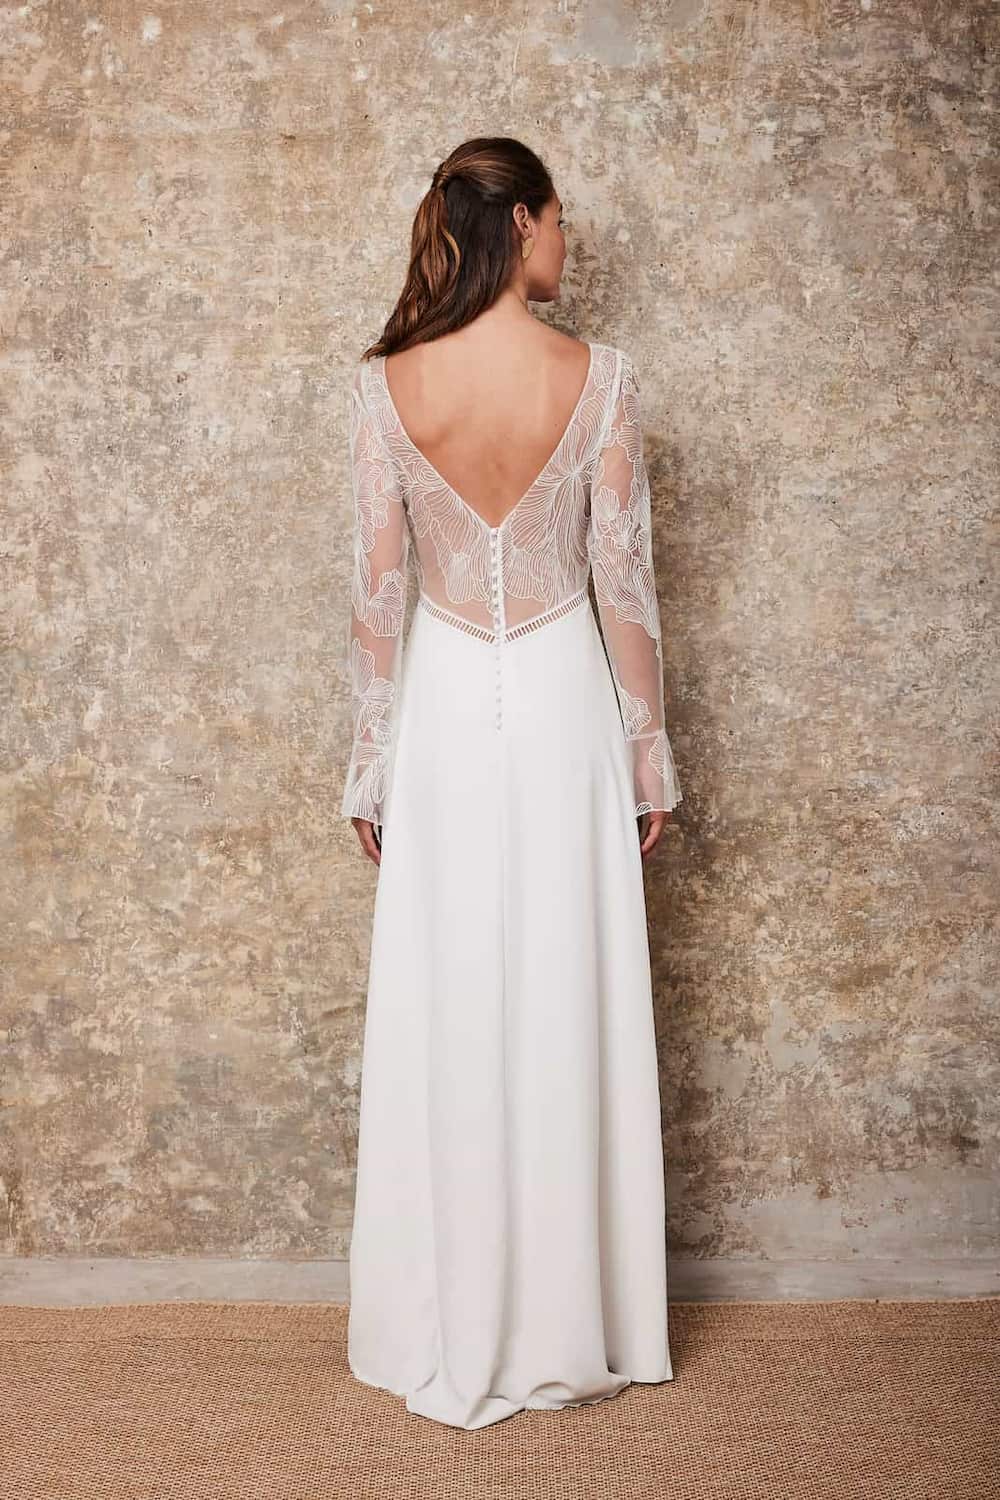 Brautkleid mit langärmligen Oberteil aus französischer Spitze in großem Muster und körpernahen Schnitt